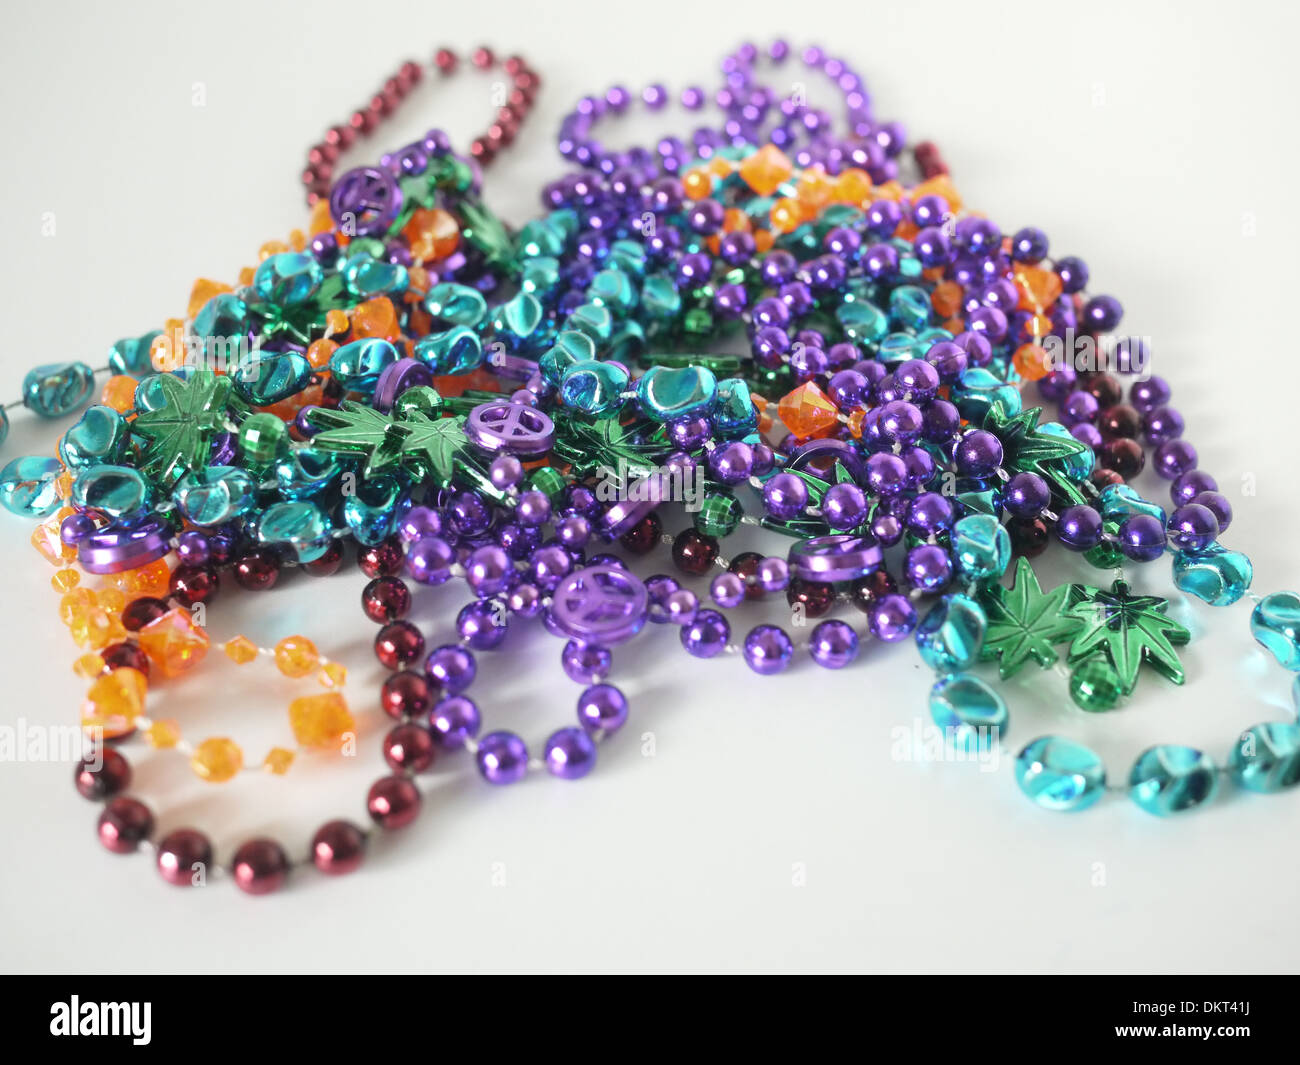 Mardi gars beads Stock Photo